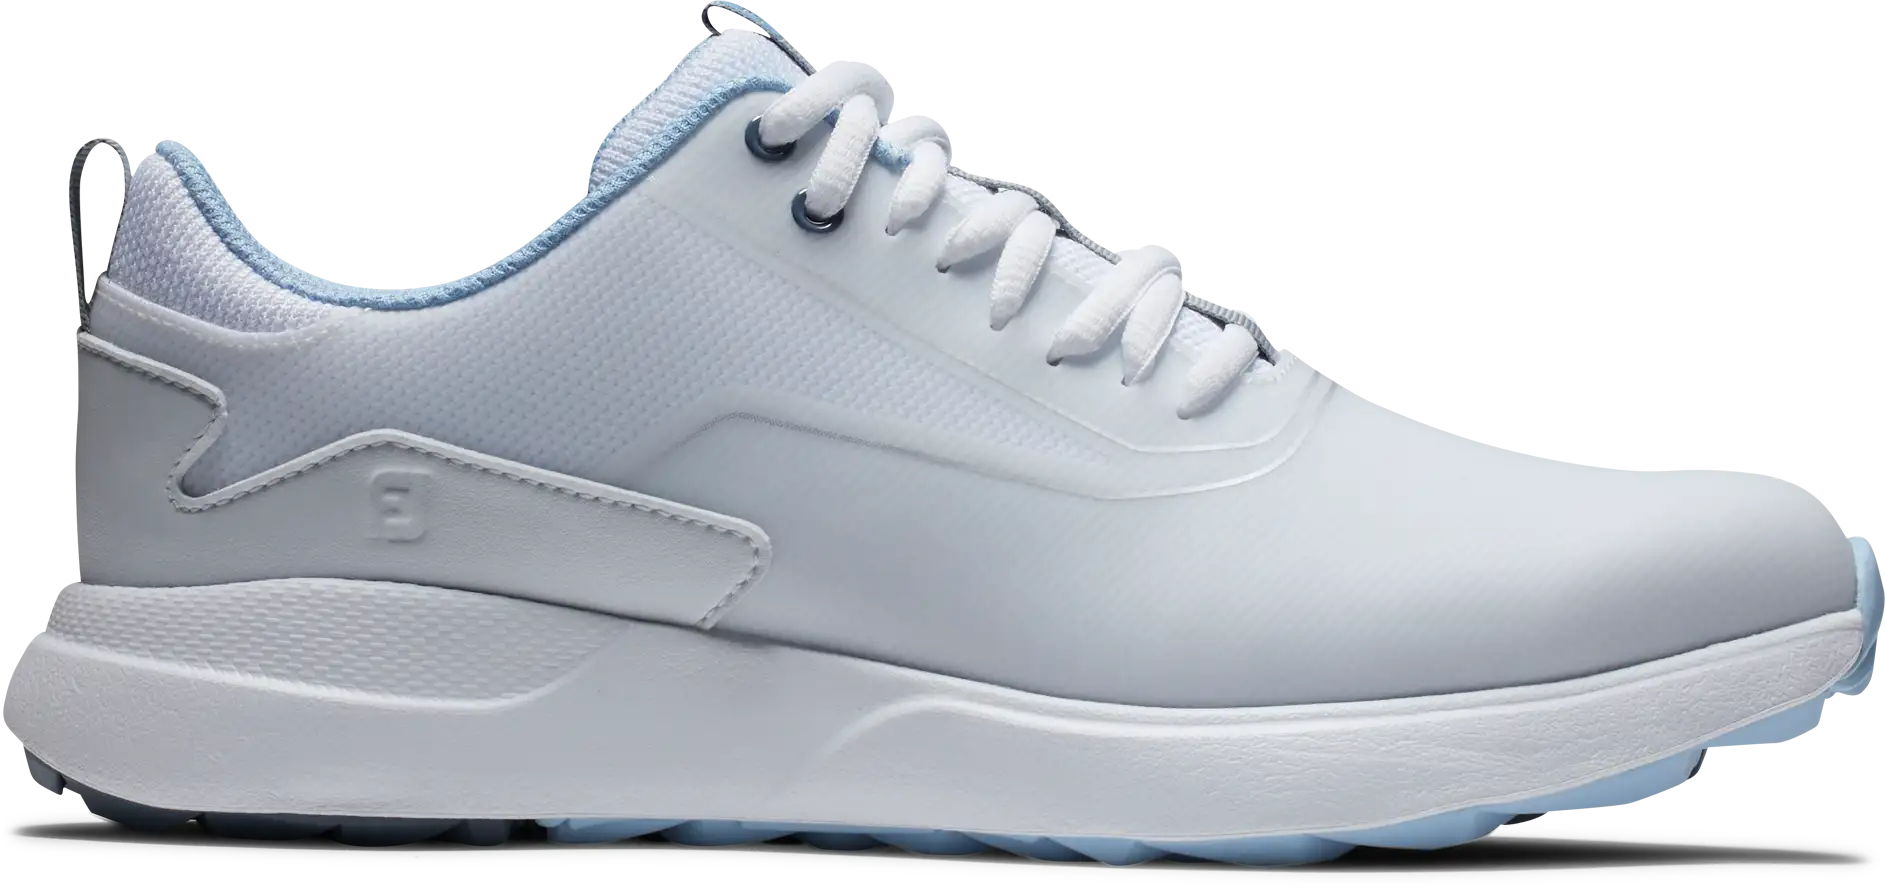 FootJoy Performa Golfschuh, weiß/hellblau